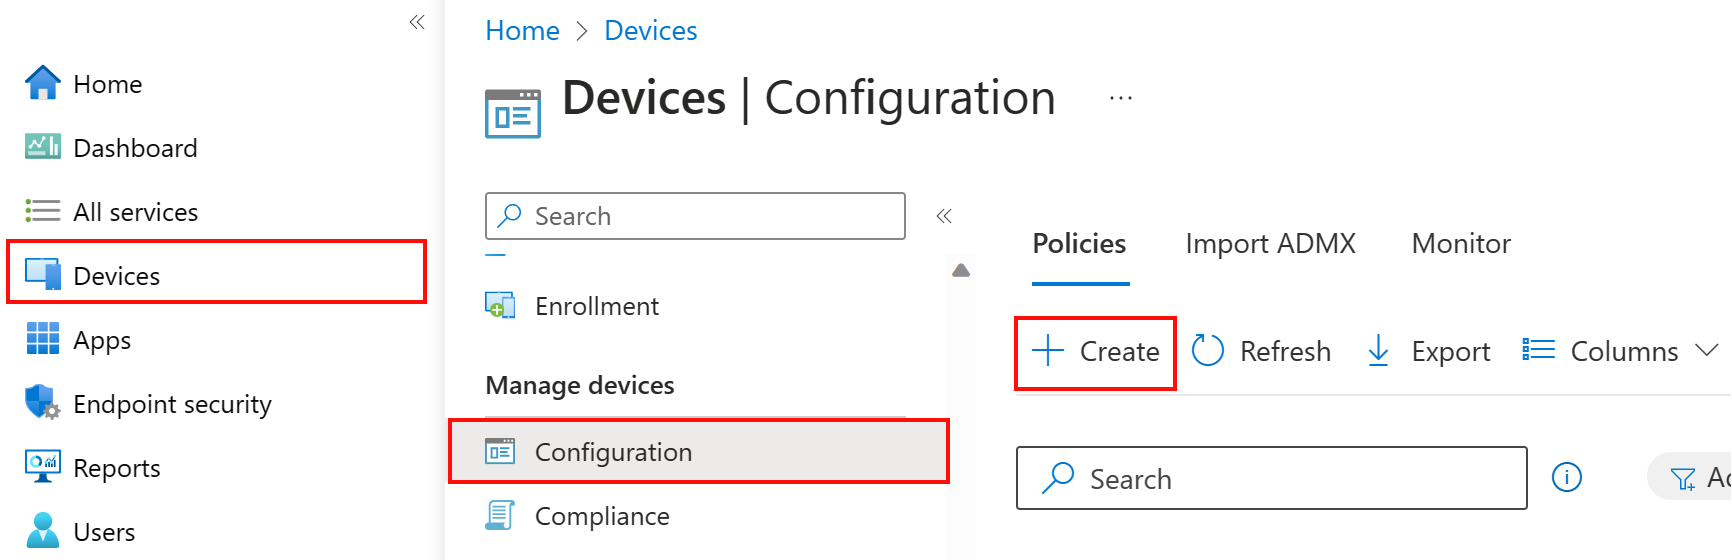 Create a new device configuration profile in Microsoft Intune using the Intune admin center.